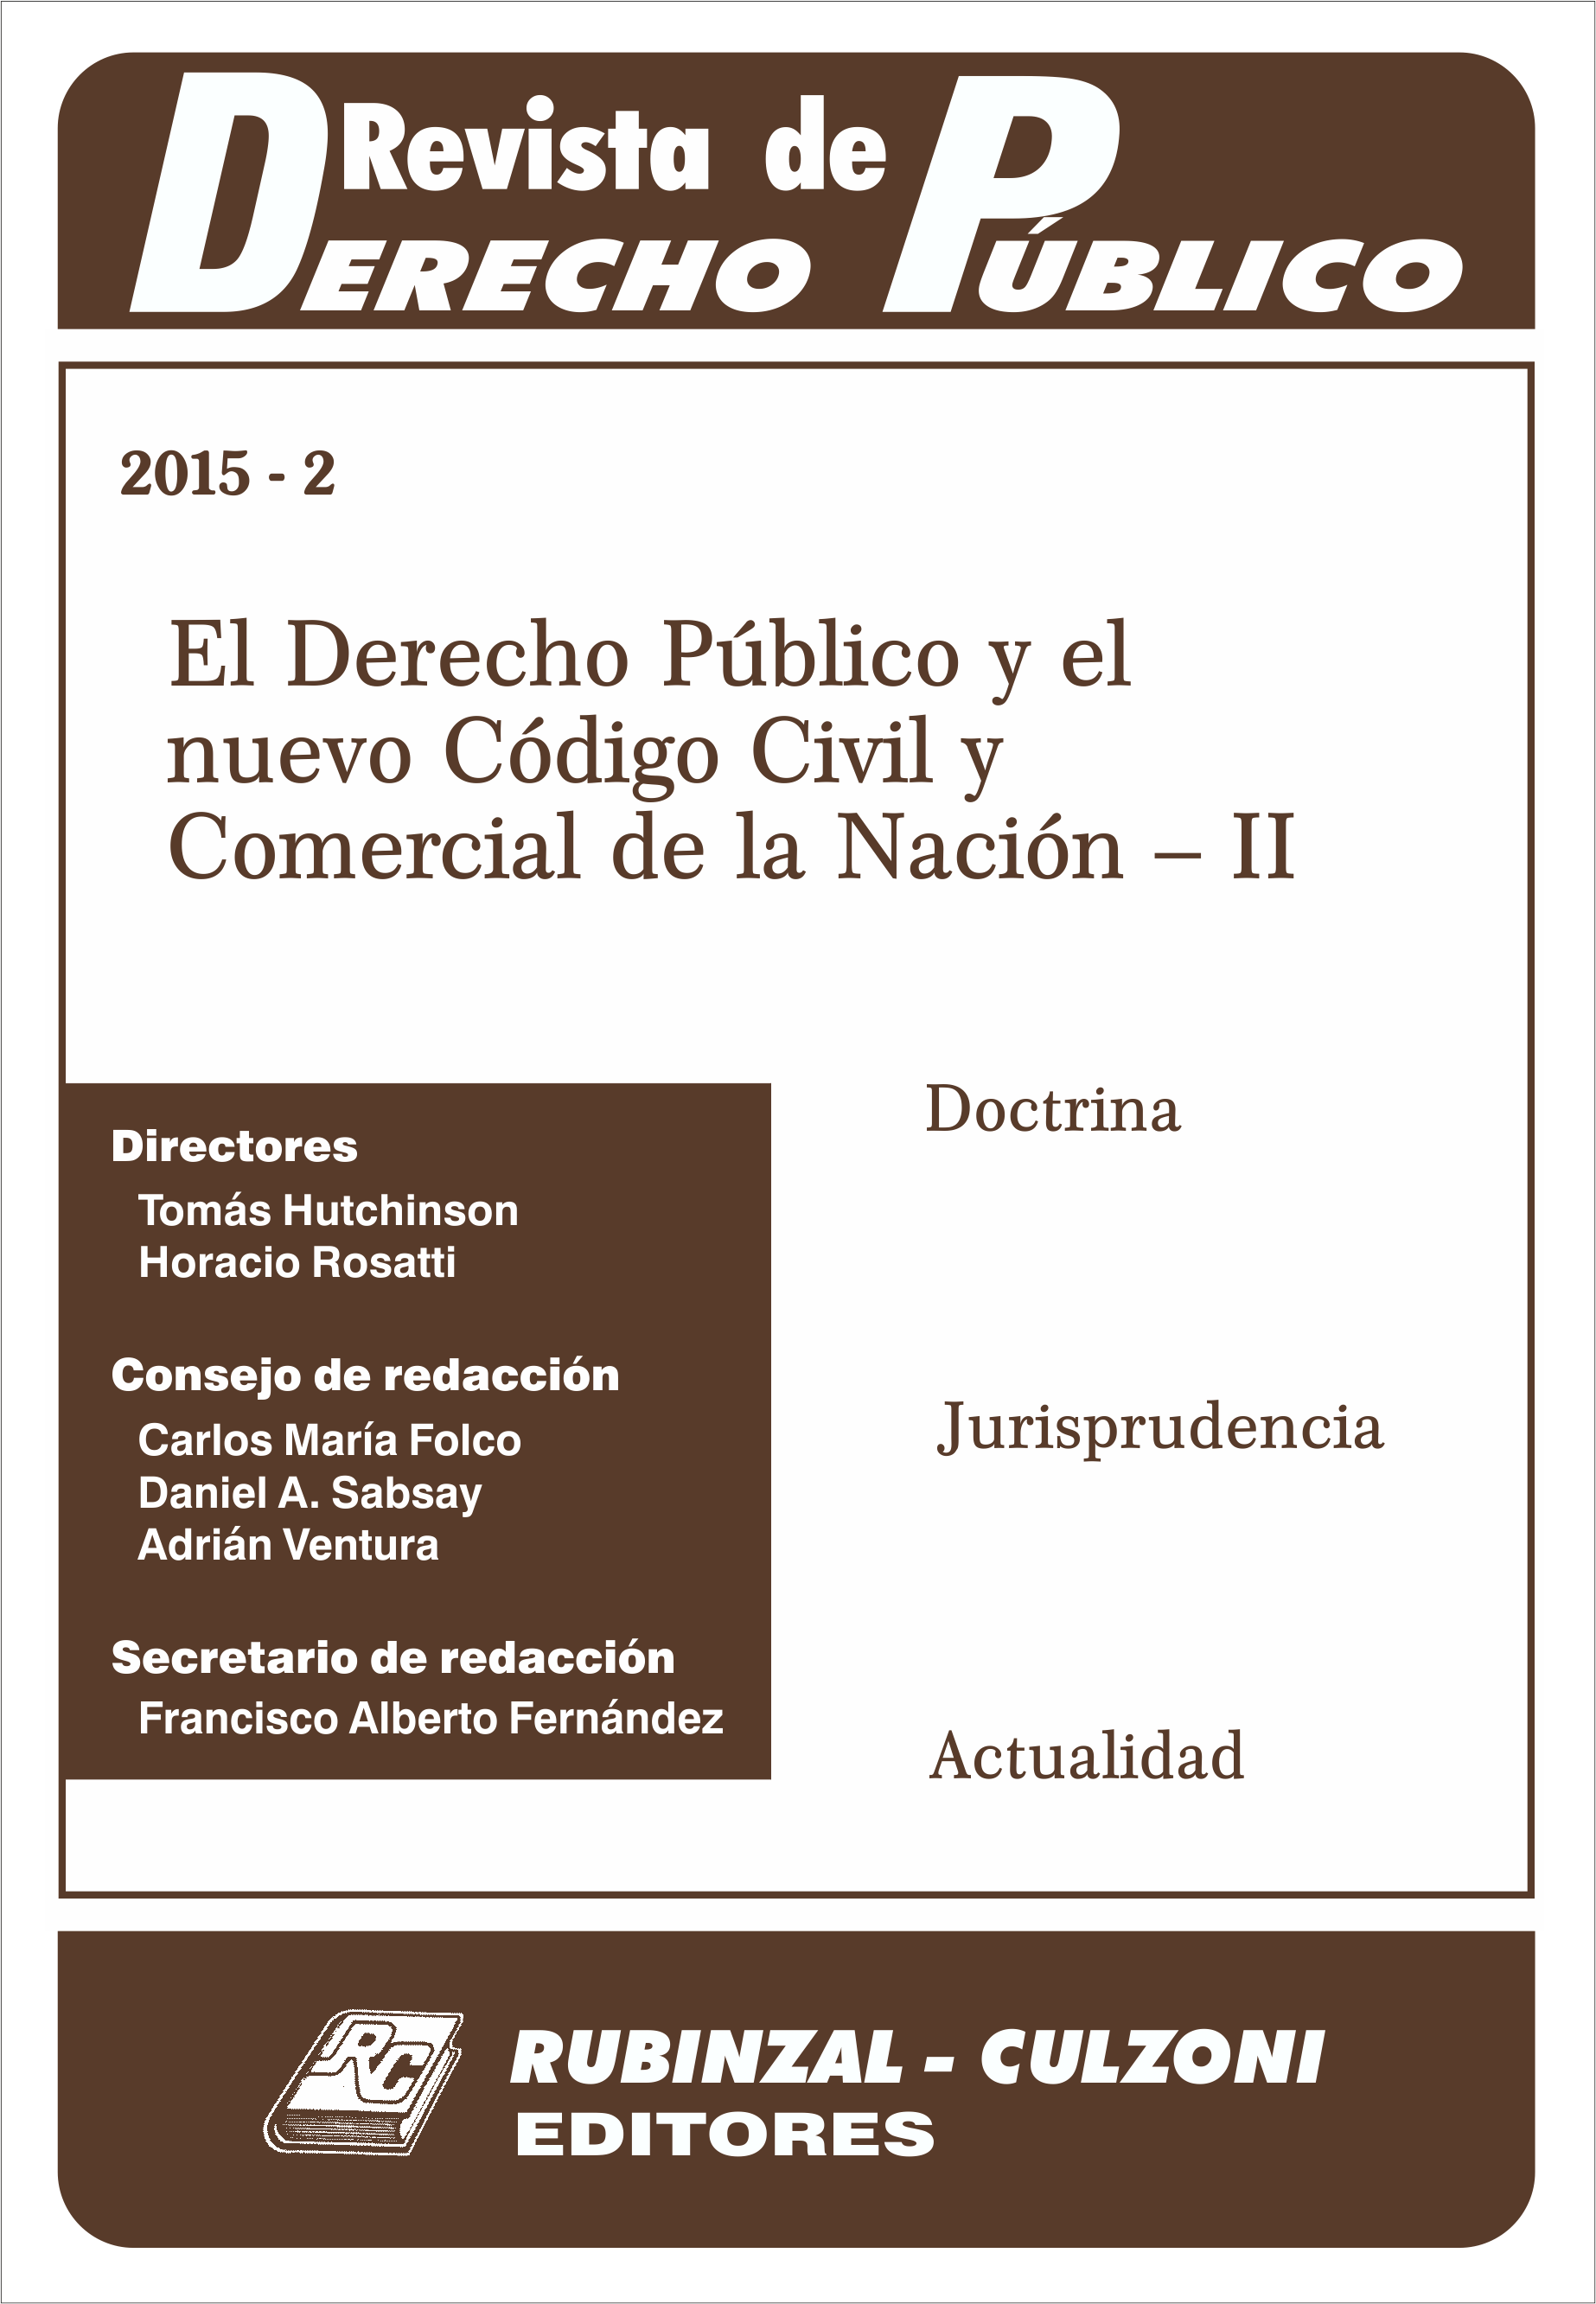 El Derecho Público y el nuevo Código Civil y Comercial de la Nación - II. [2015-2]